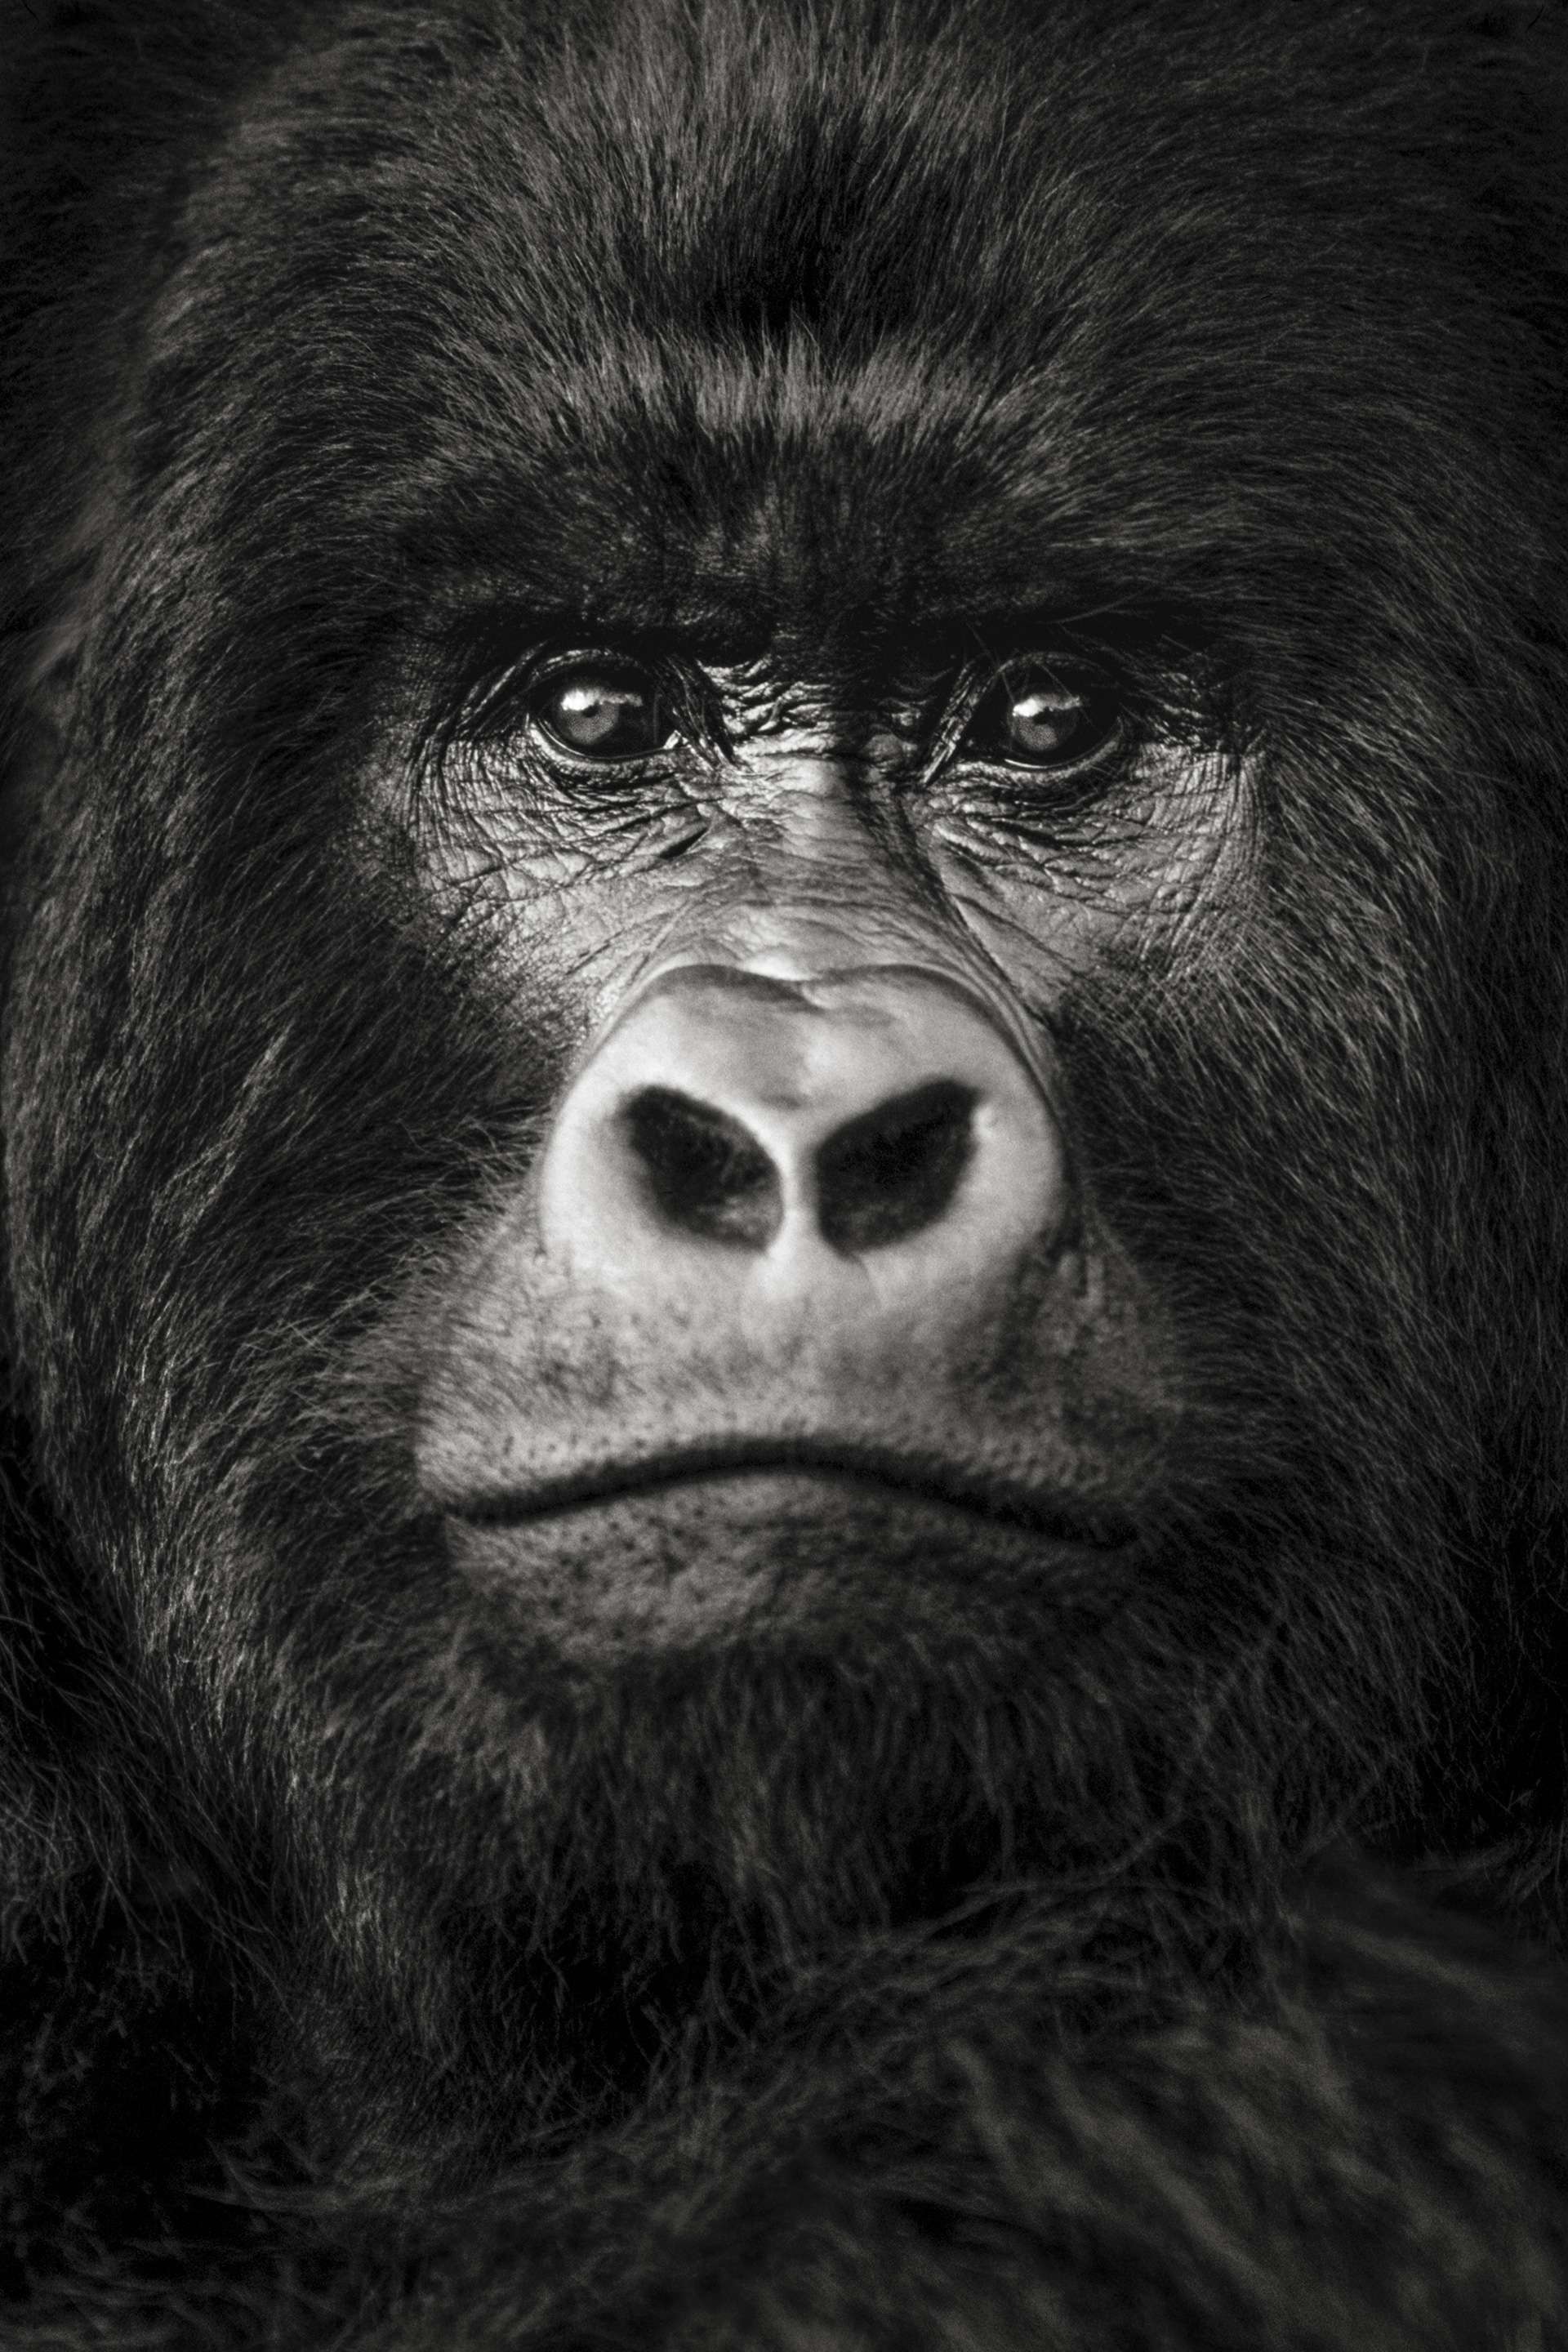 Gilles Martin's photograph of a gorilla from Congo-DRC